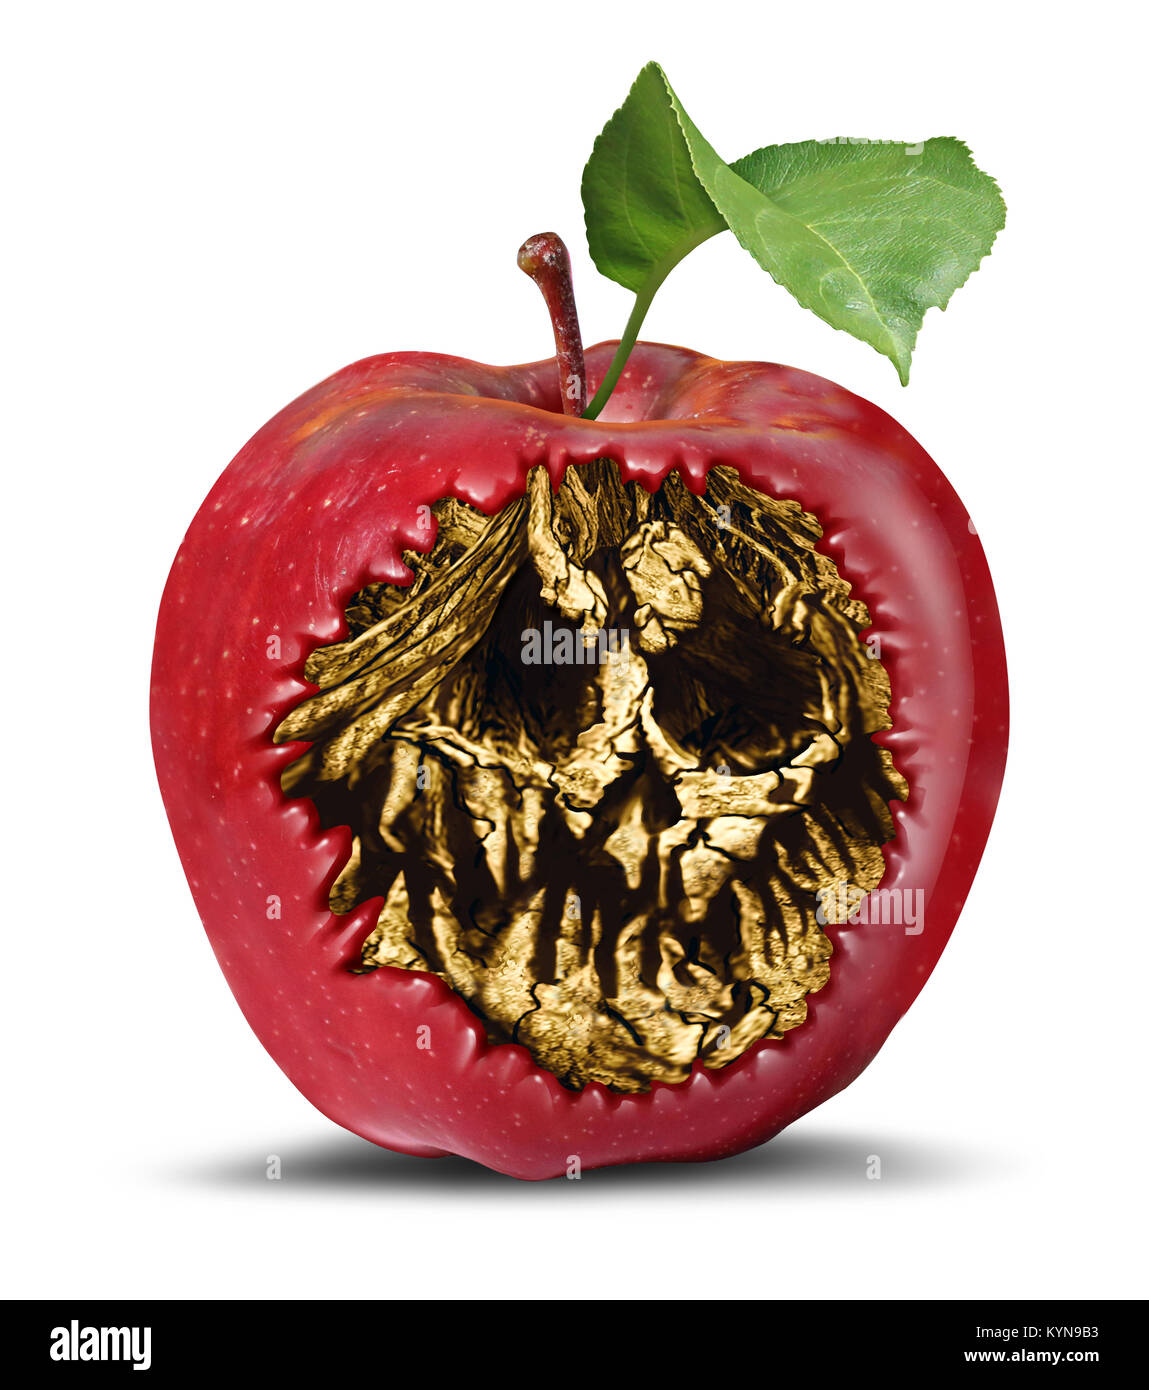 Poison apple y el concepto de seguridad alimentaria como una fruta podrida con una muerte oculto dentro del cráneo como un símbolo de brujería o maldición mágica. Foto de stock